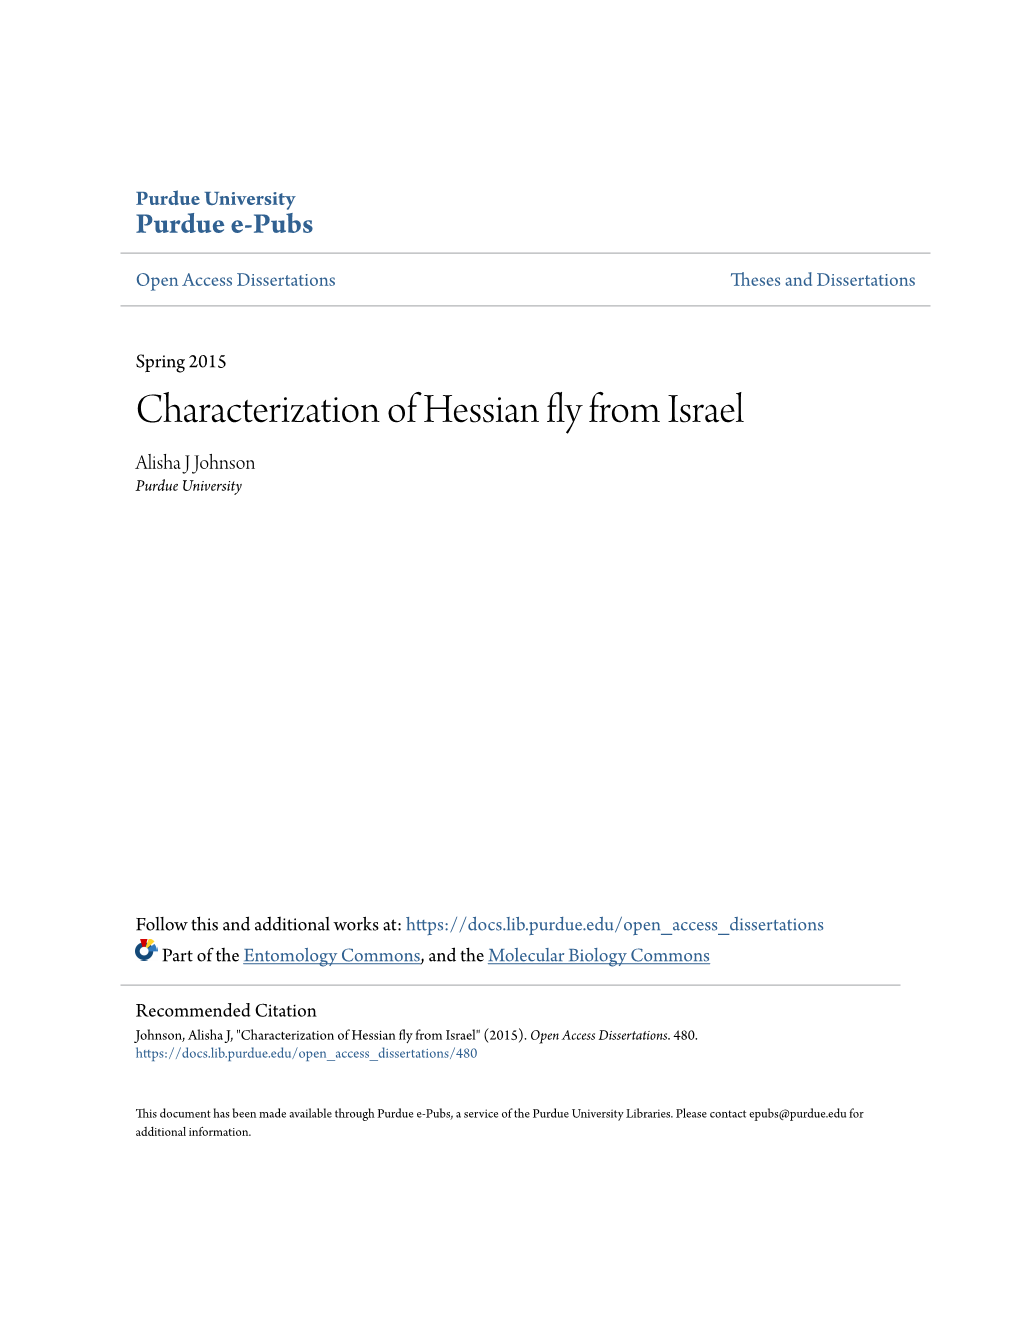 Characterization of Hessian Fly from Israel Alisha J Johnson Purdue University